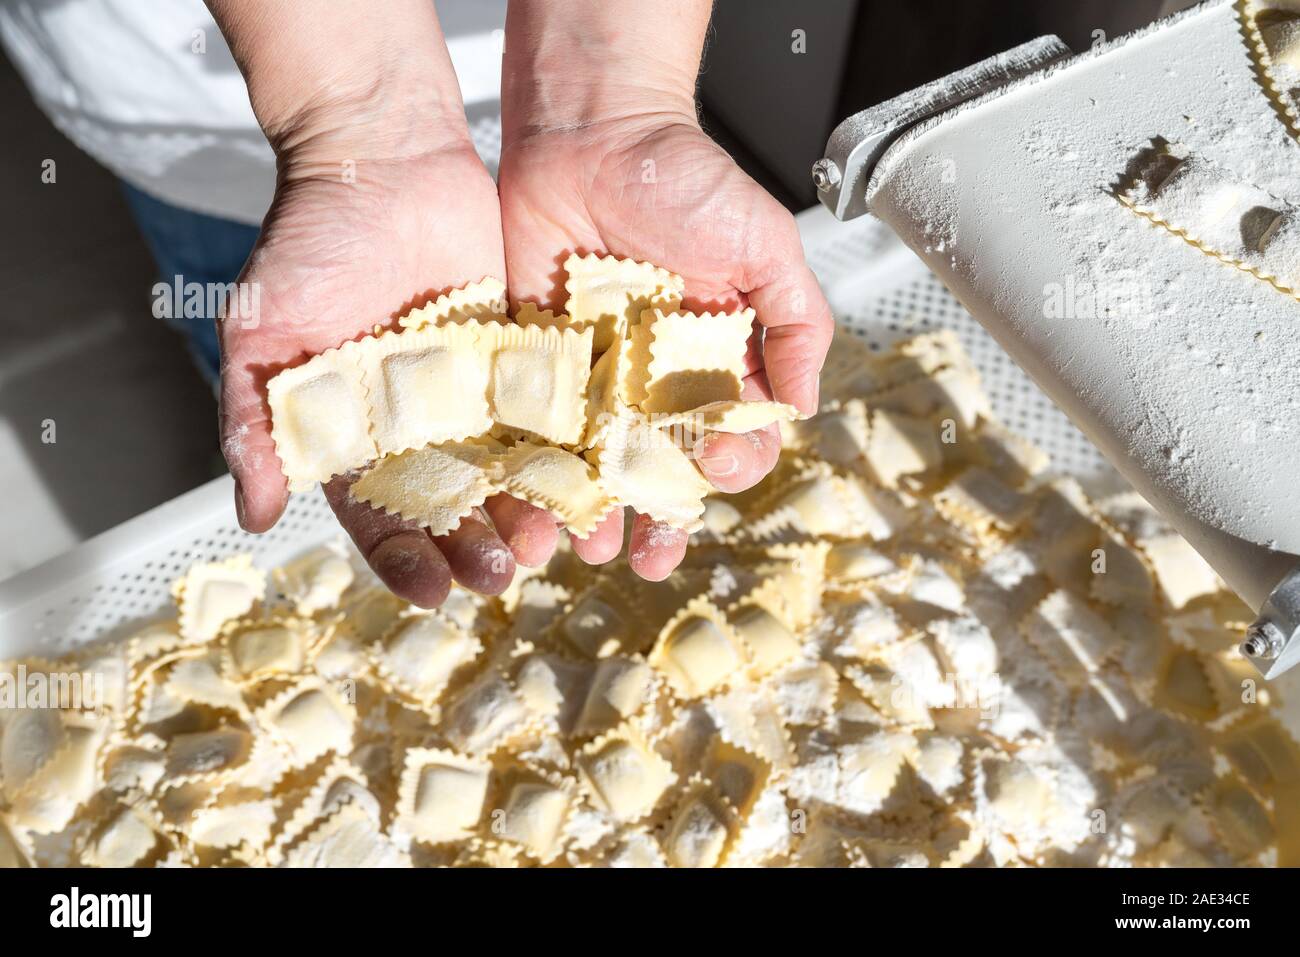 Prozess der Herstellung von Ravioli, Tortellini und Cappelletti, typisch italienischen frische Pasta - Hände der Küchenchef zeigt die frisch hergestellten Ravioli Stockfoto